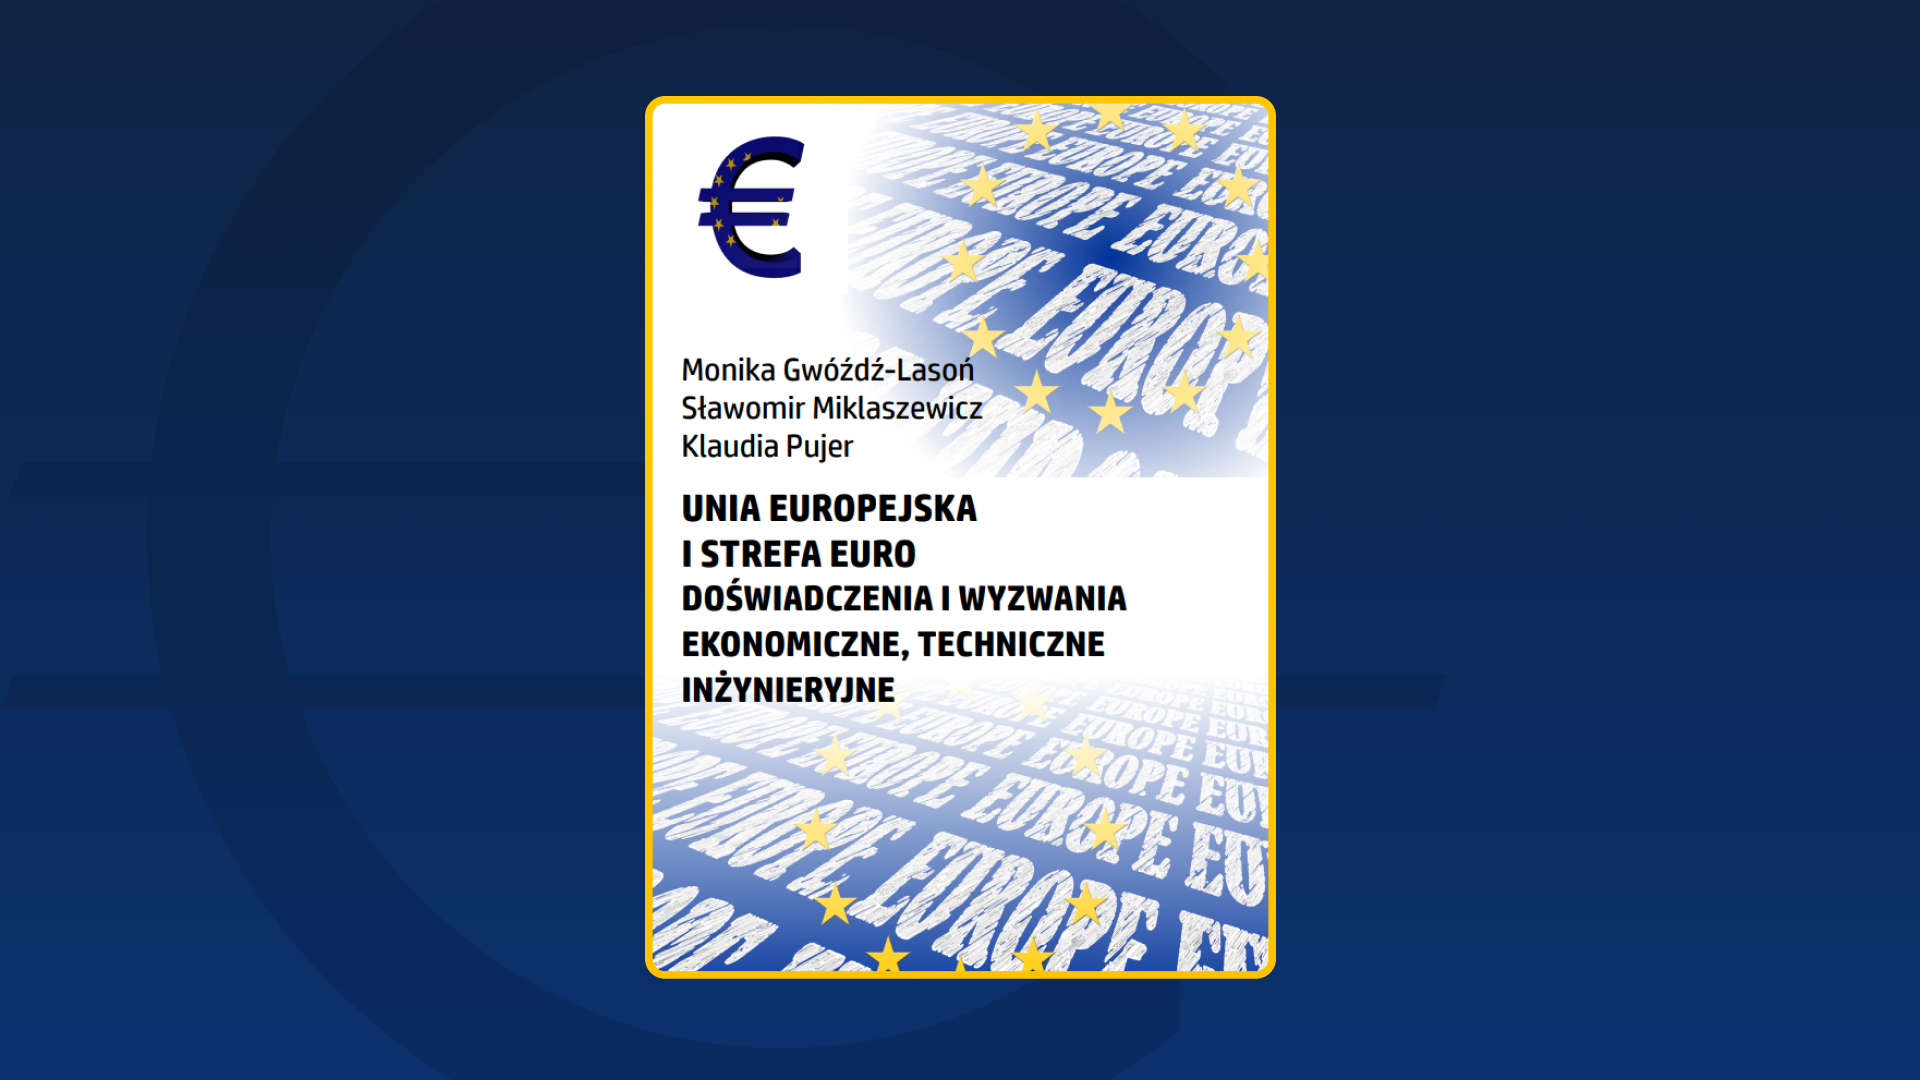 Unia Europejska i strefa euro. Doświadczenia i wyzwania ekonomiczne, techniczne, inżynieryjne (2017)